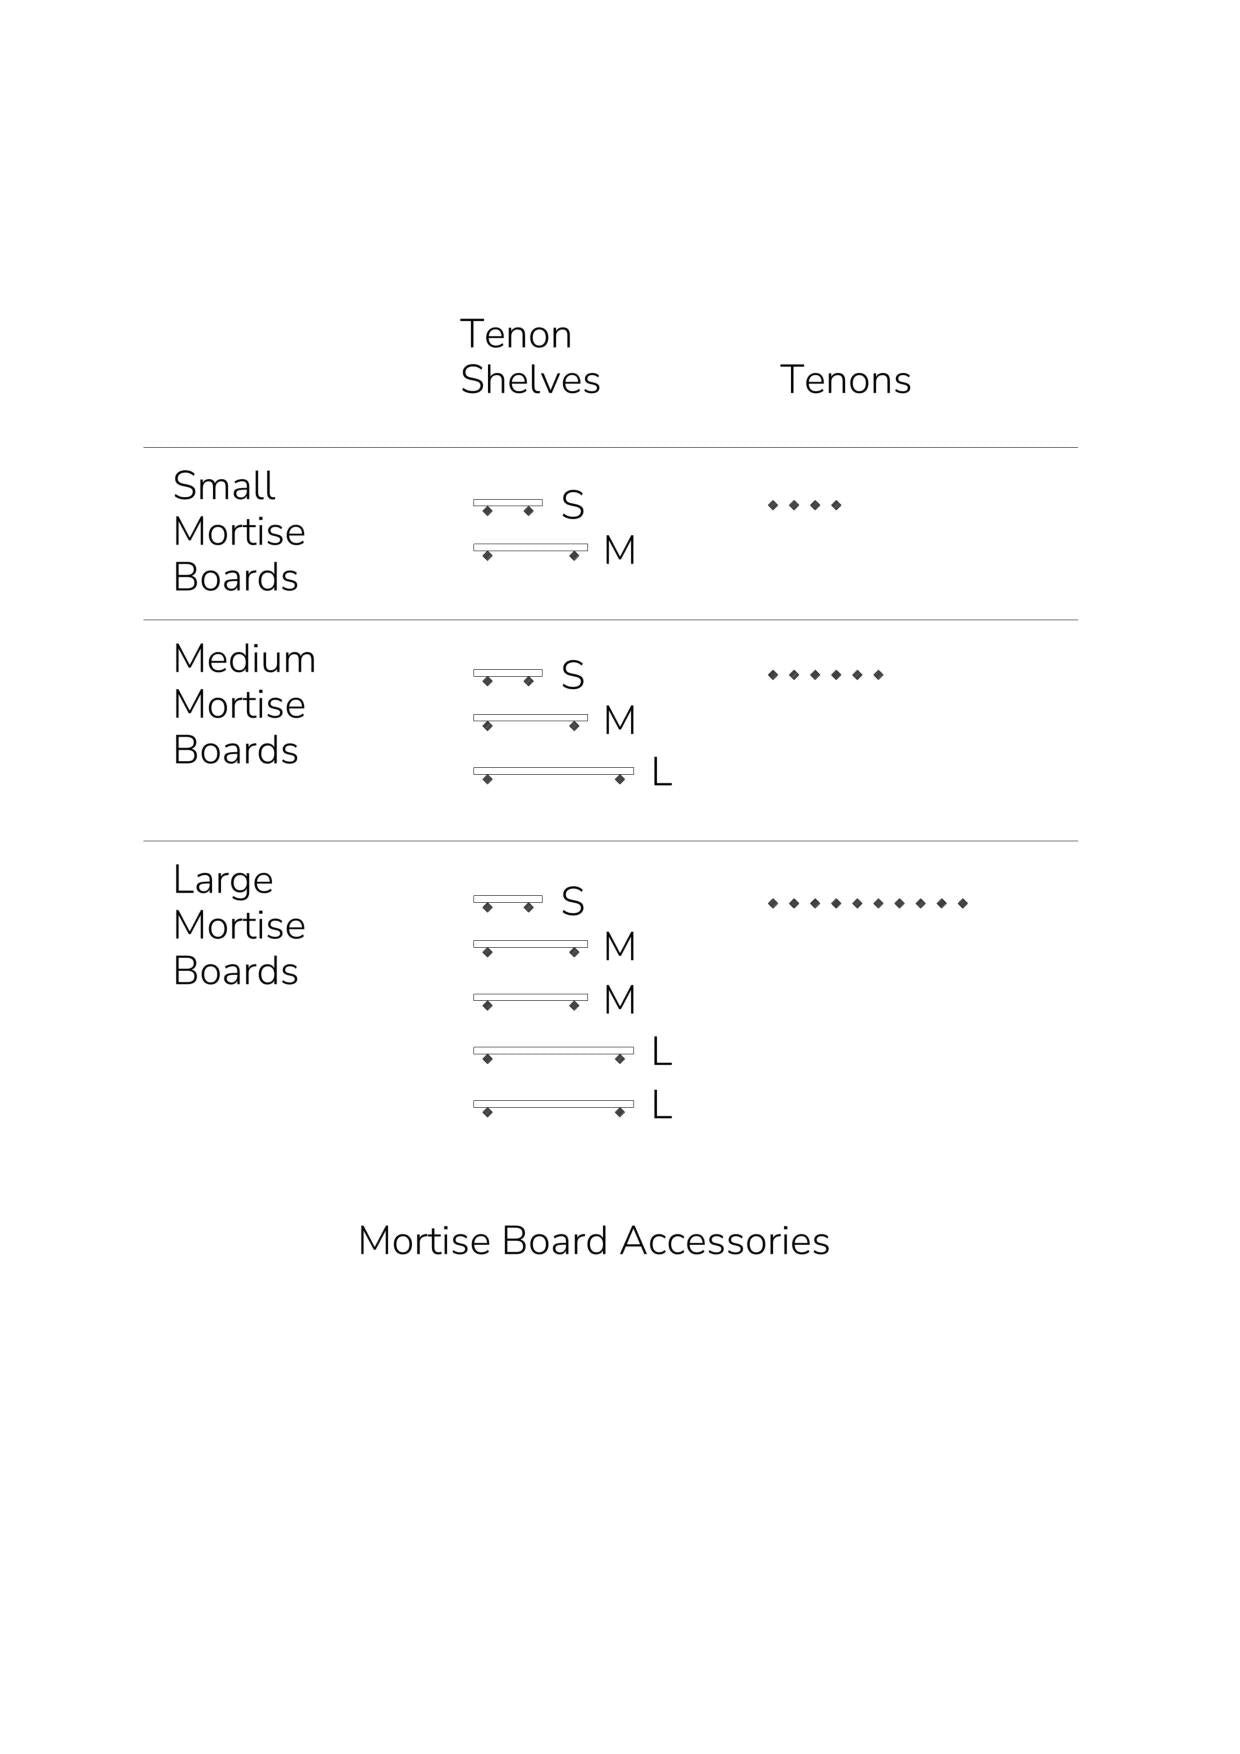 Mortise Board and Tenon Accessories